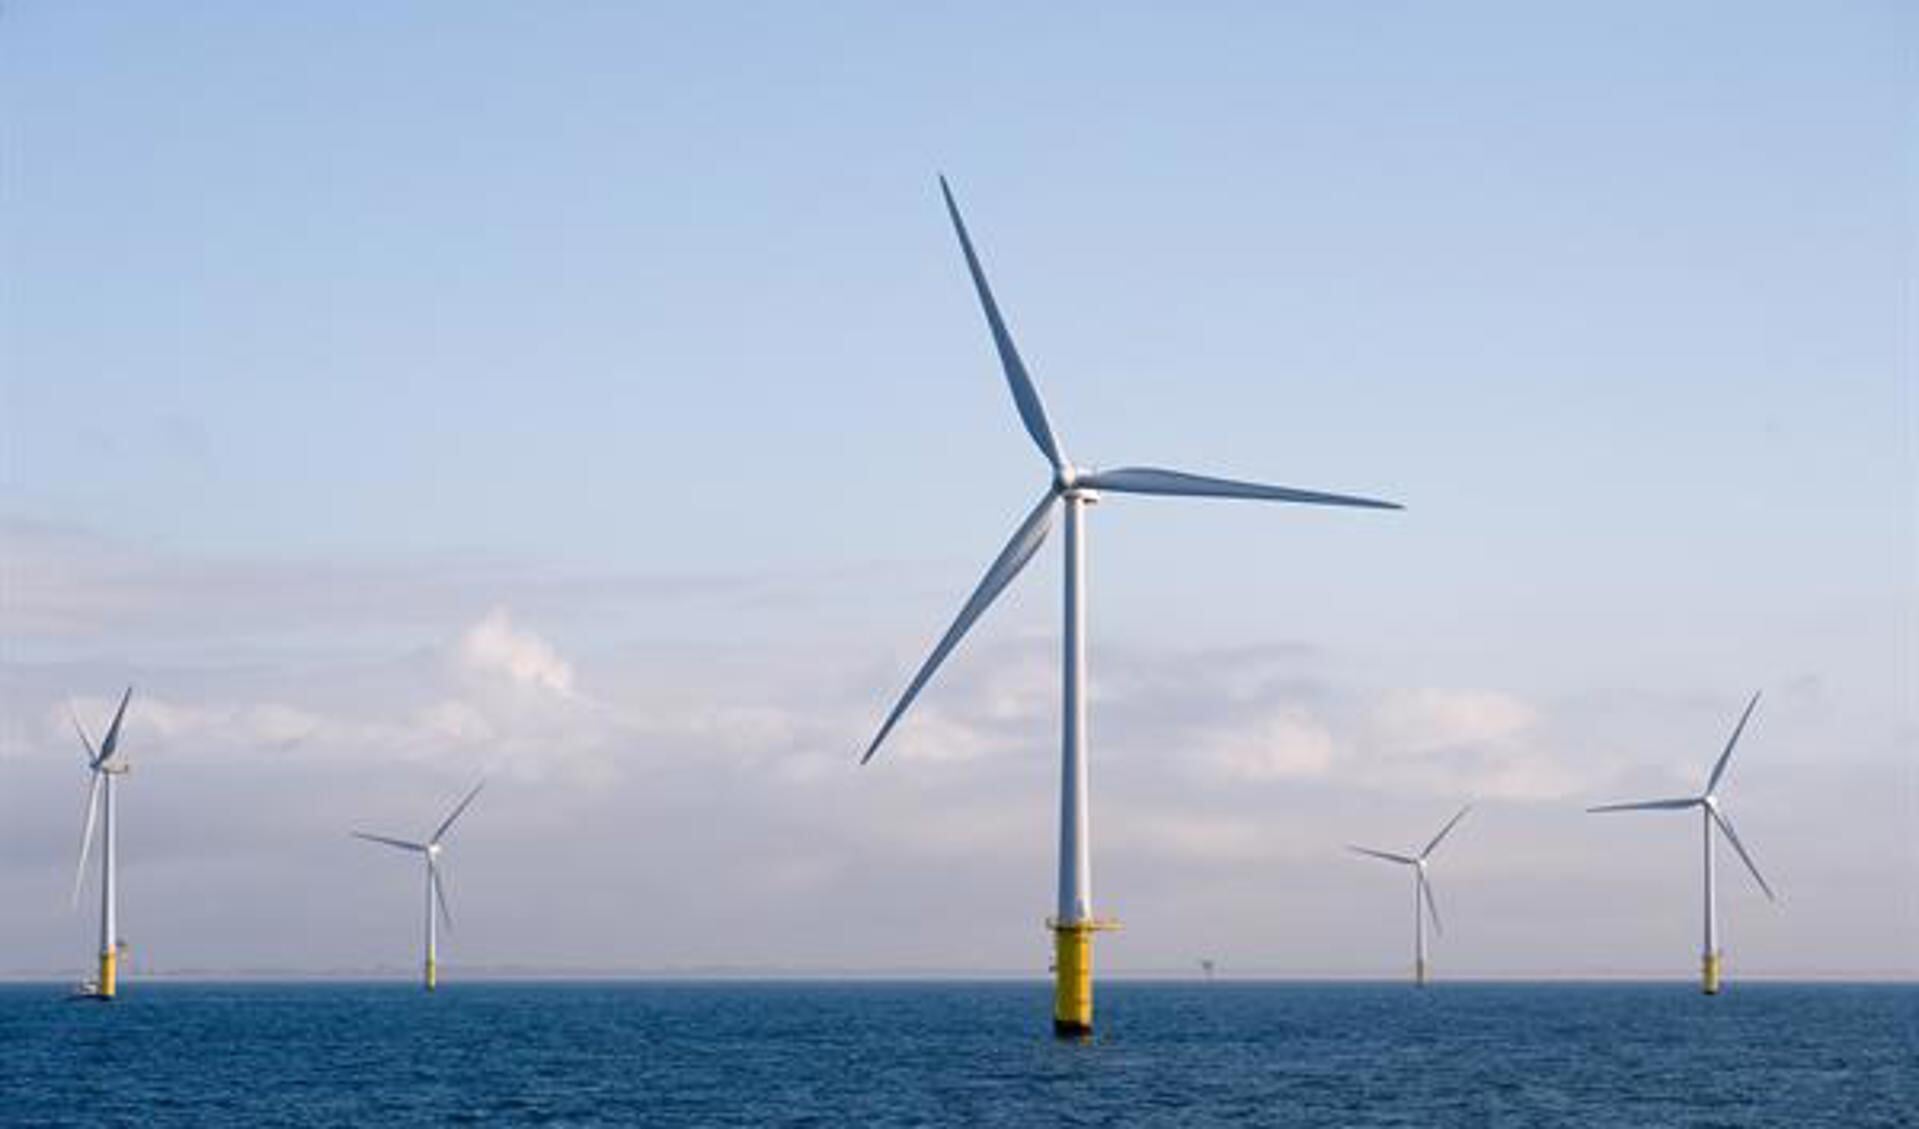 Noordzee Windpark Egmond aan Zee
Bron: https://beeldbank.rws.nl, Rijkswaterstaat / Sander de Jong